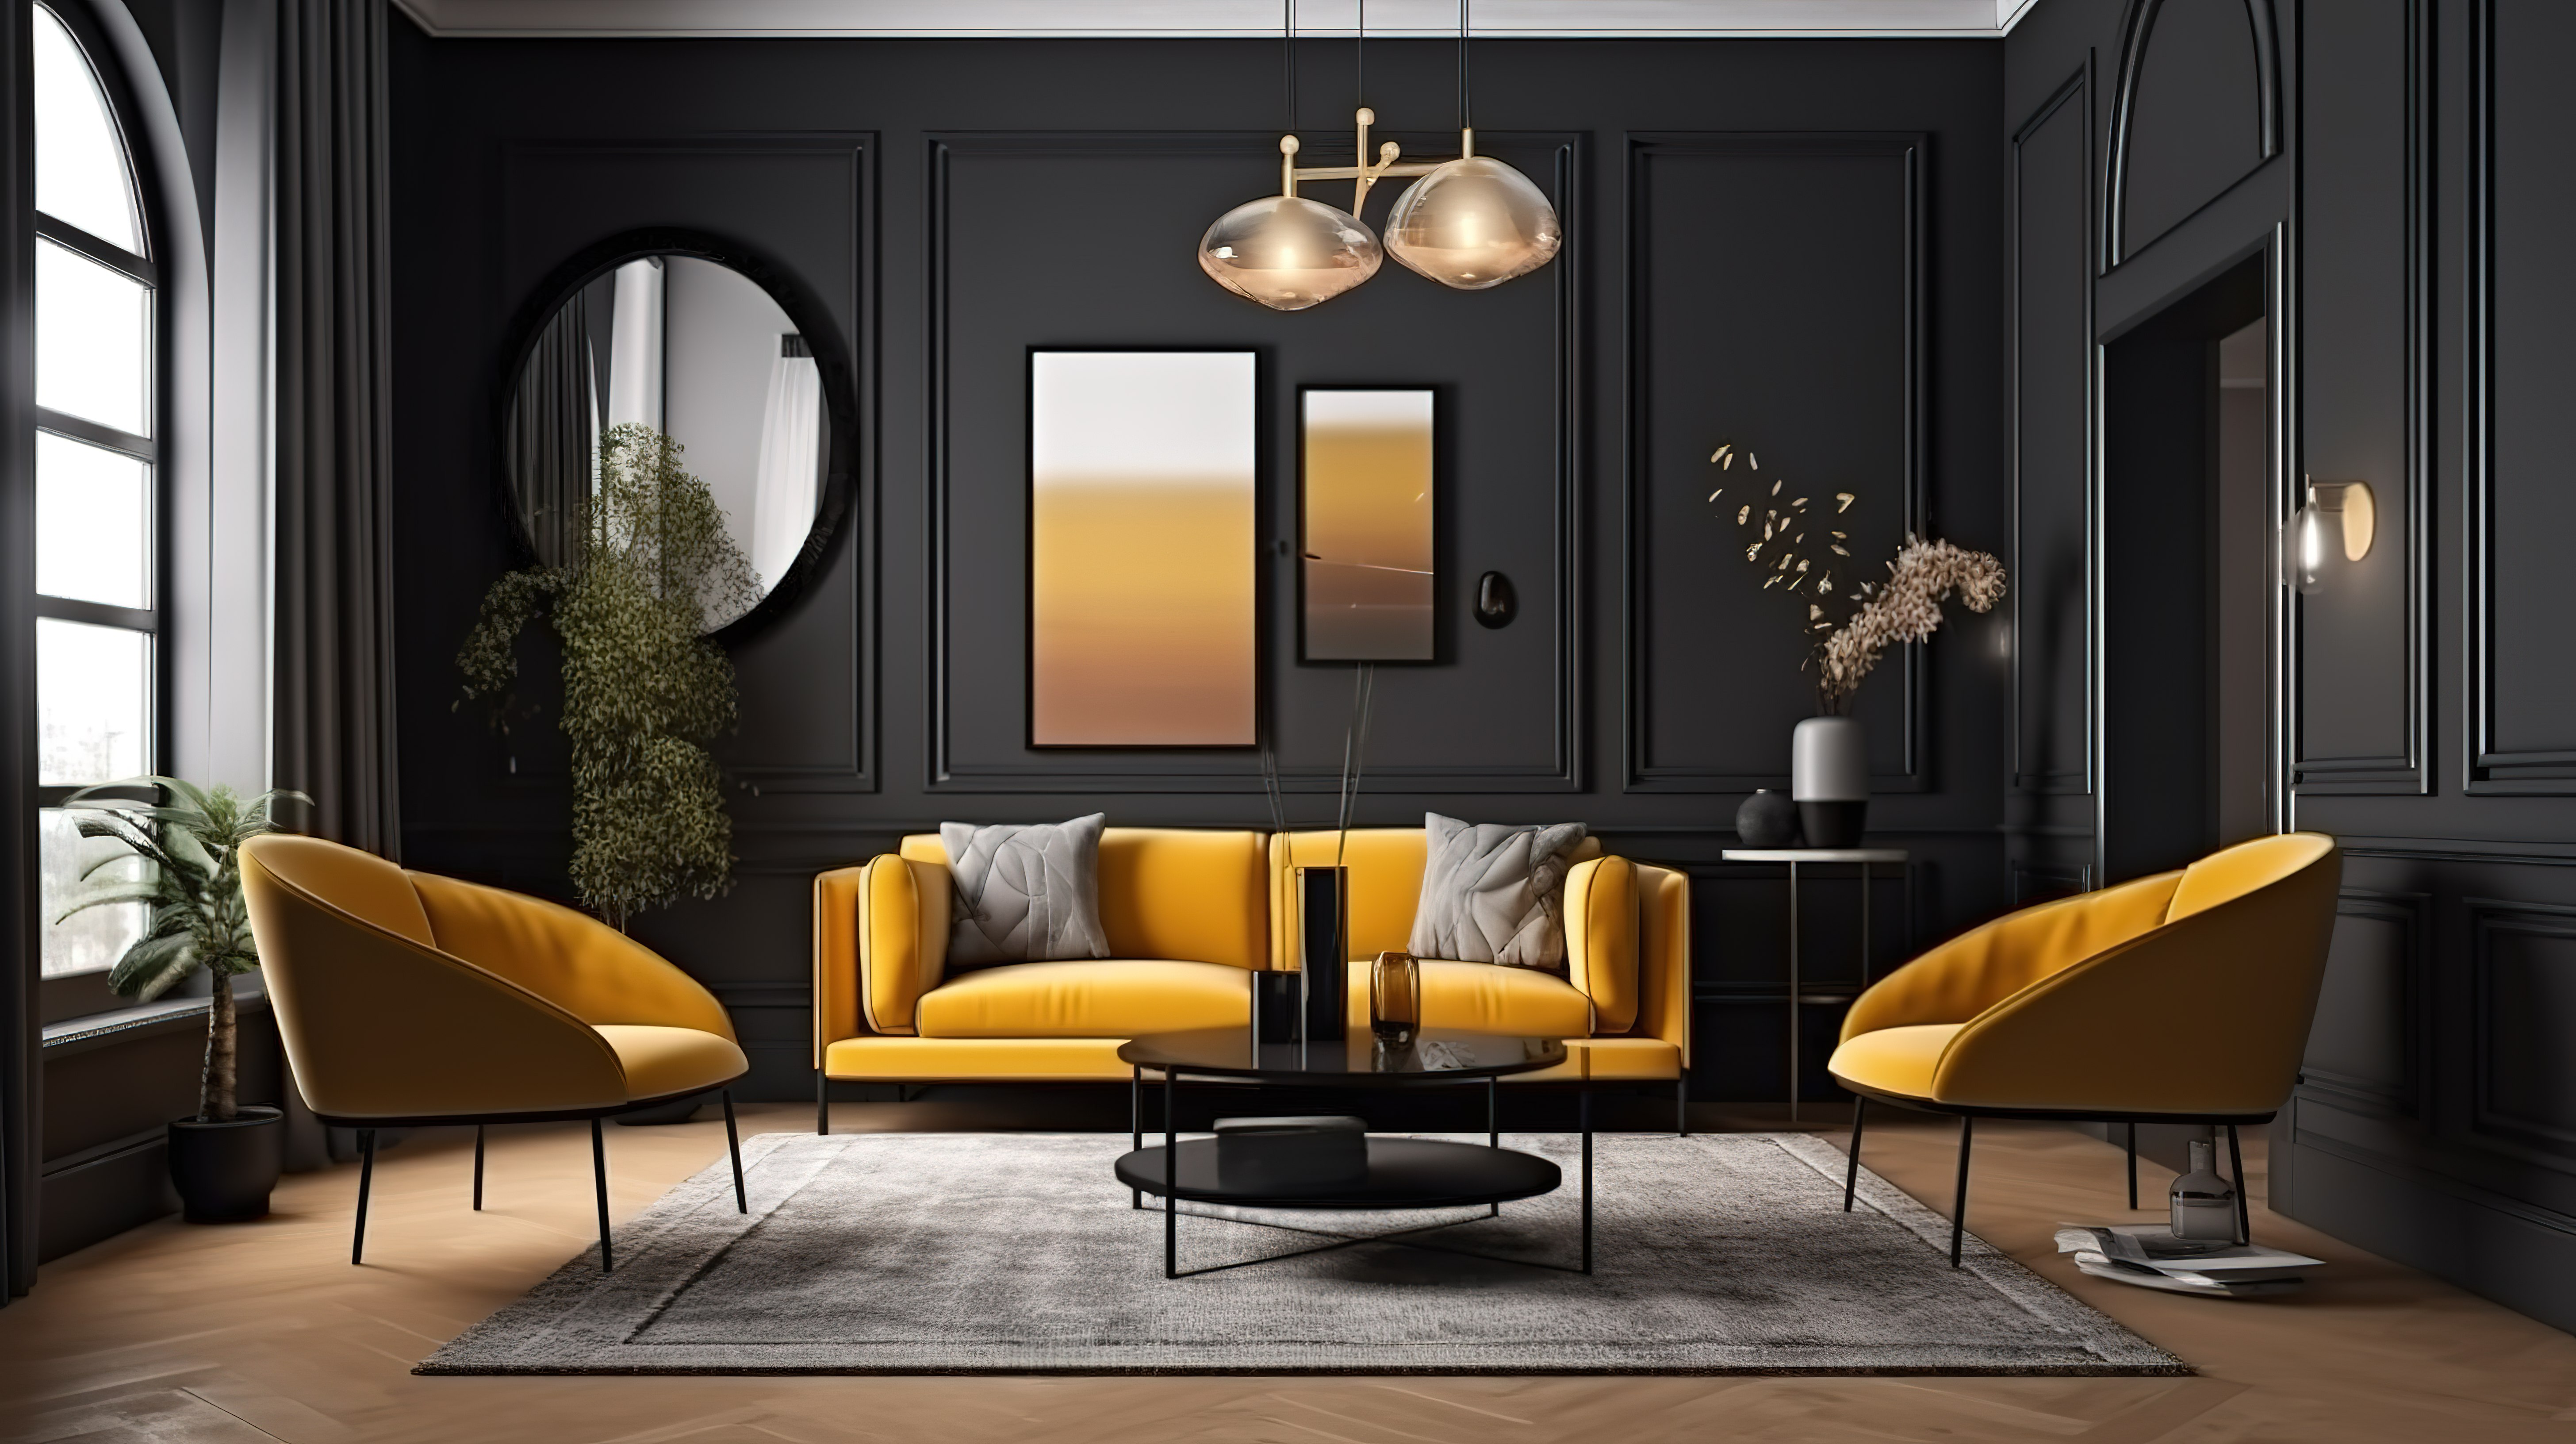 豪华客厅内部与现代沙发和扶手椅的 3D 渲染和框架模型图片